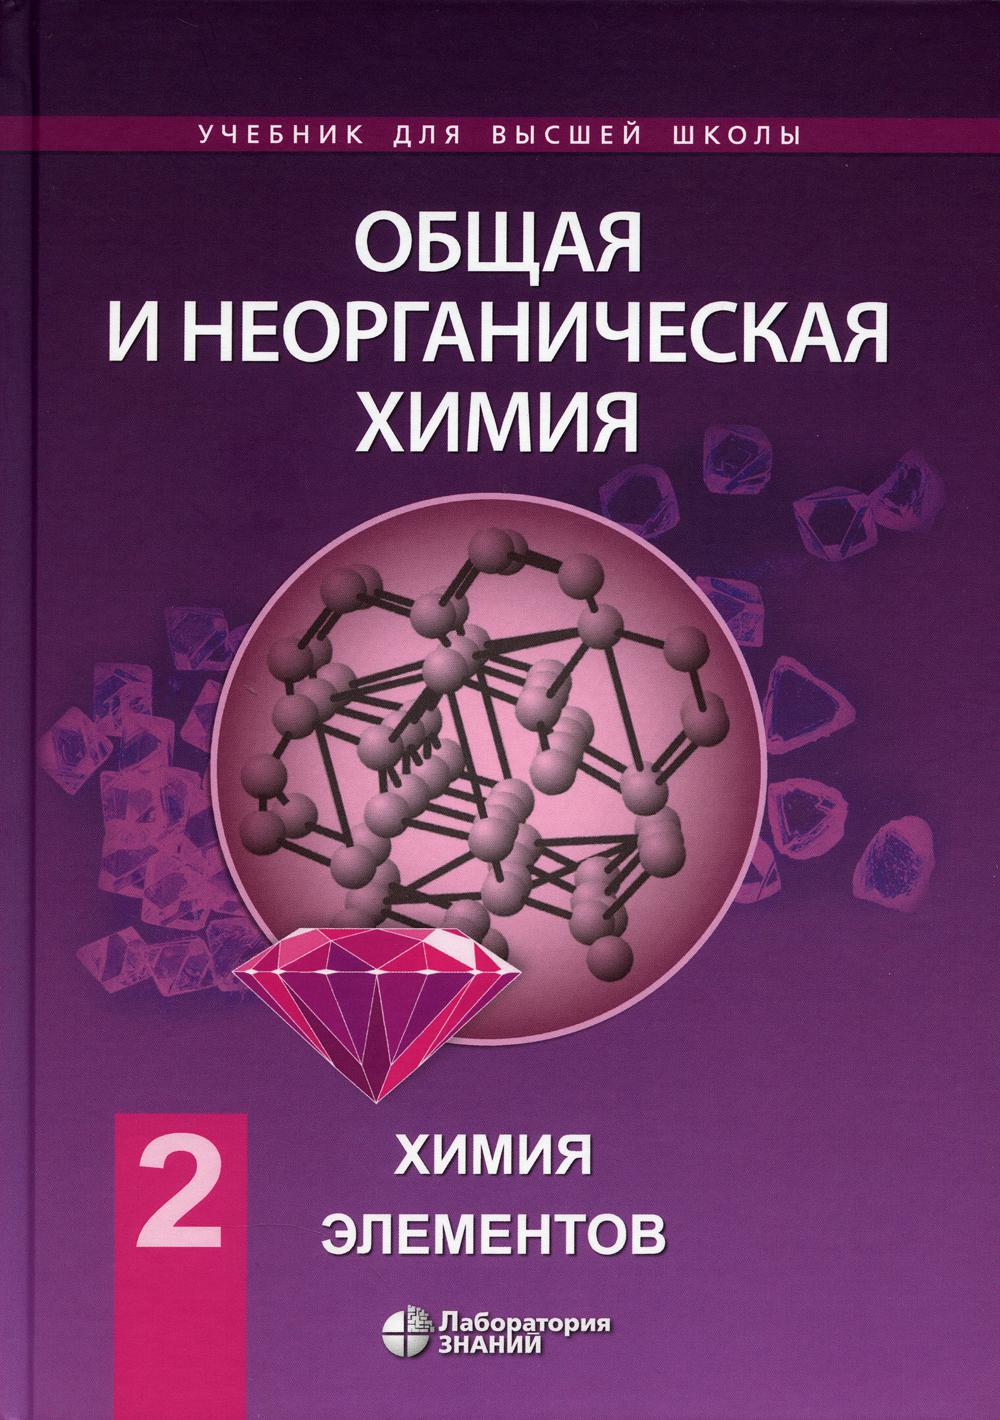 Савинкина Е.В. Общая и неорганическая химия. В 2 томах, том 2. Химия элементов 